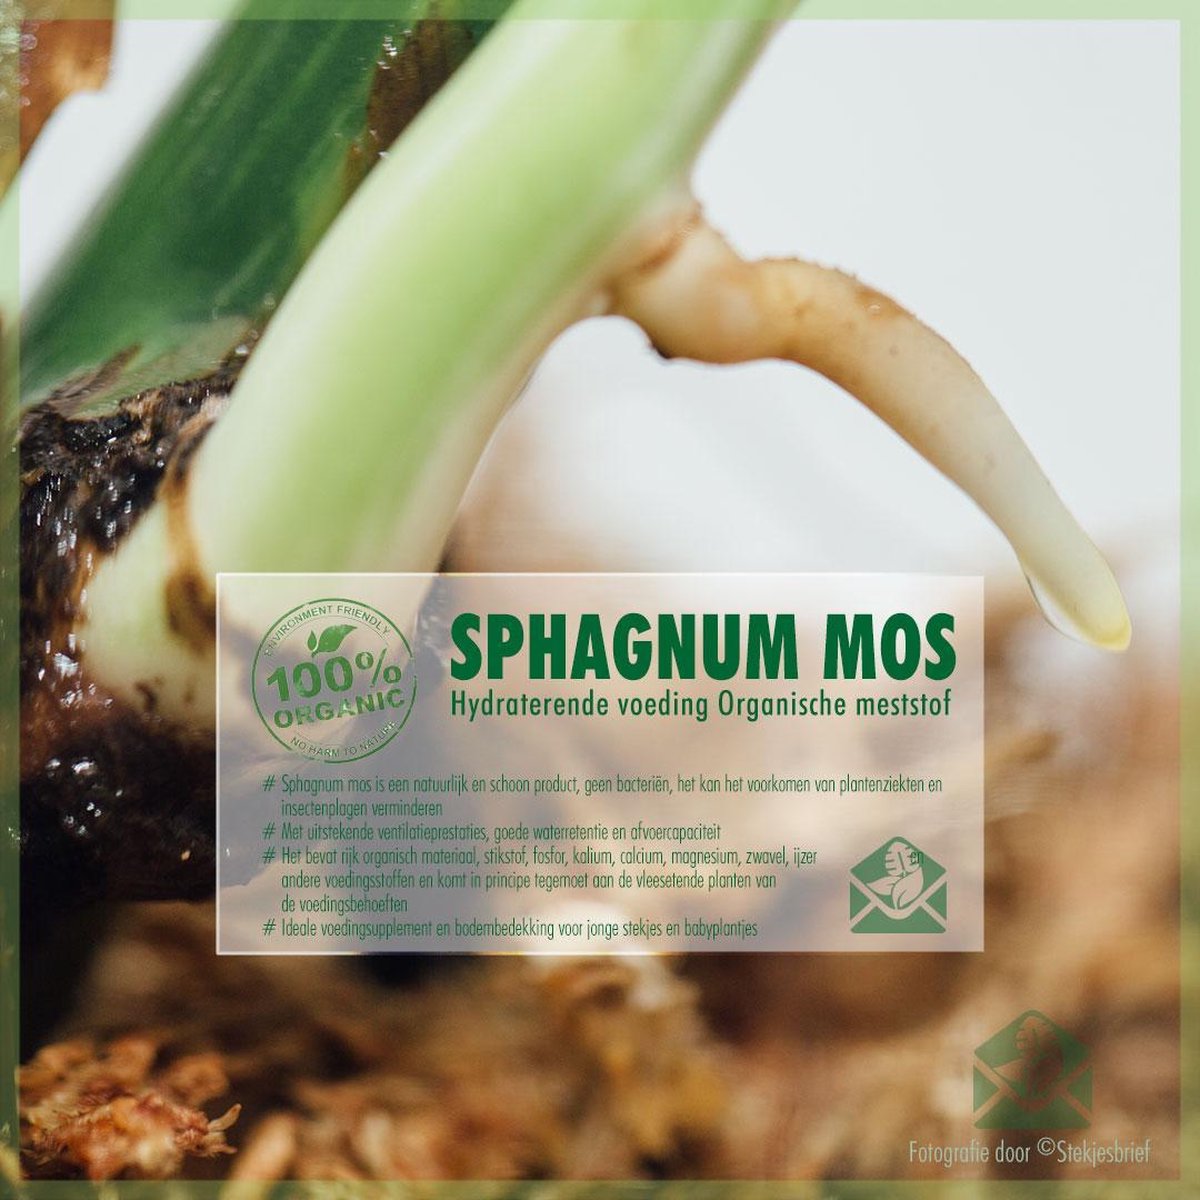 Sphagnum (spagnum 250 g) mos voor stekjes, terrariums en amfibieën - Merkloos